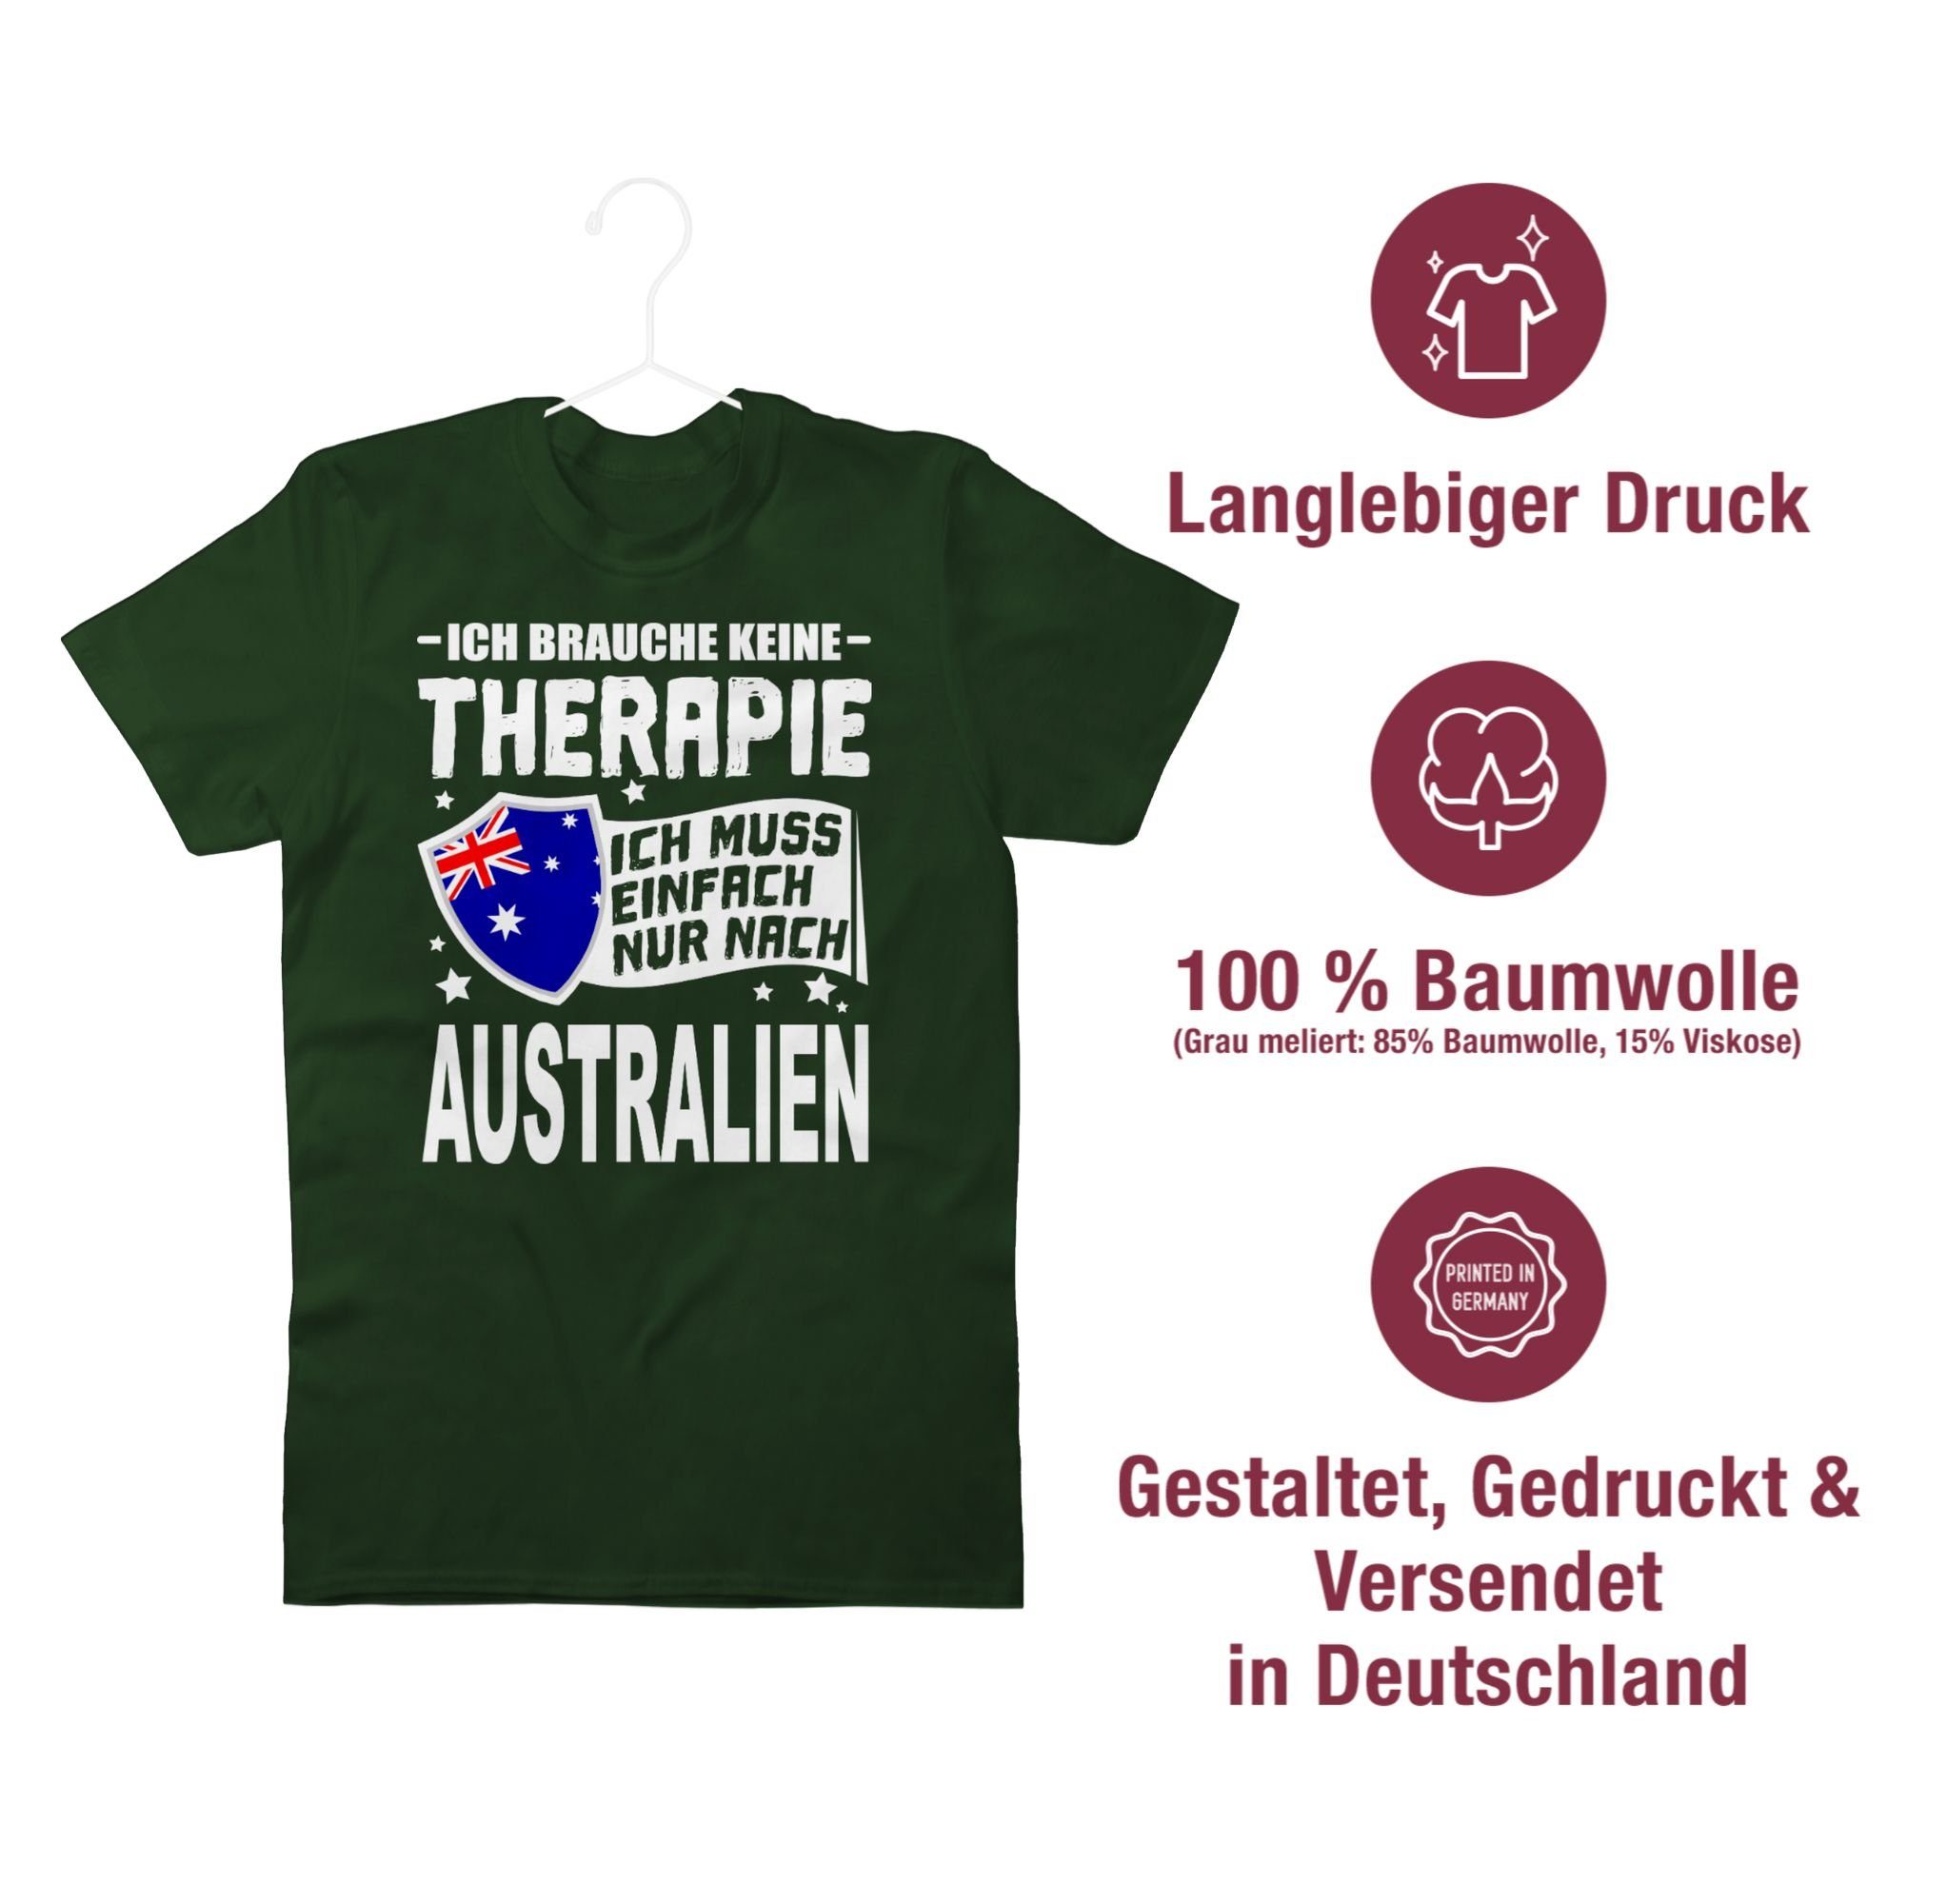 Länder 03 Therapie Wappen keine brauche einfach - weiß Australien nur Shirtracer Ich T-Shirt nach Ich Dunkelgrün muss